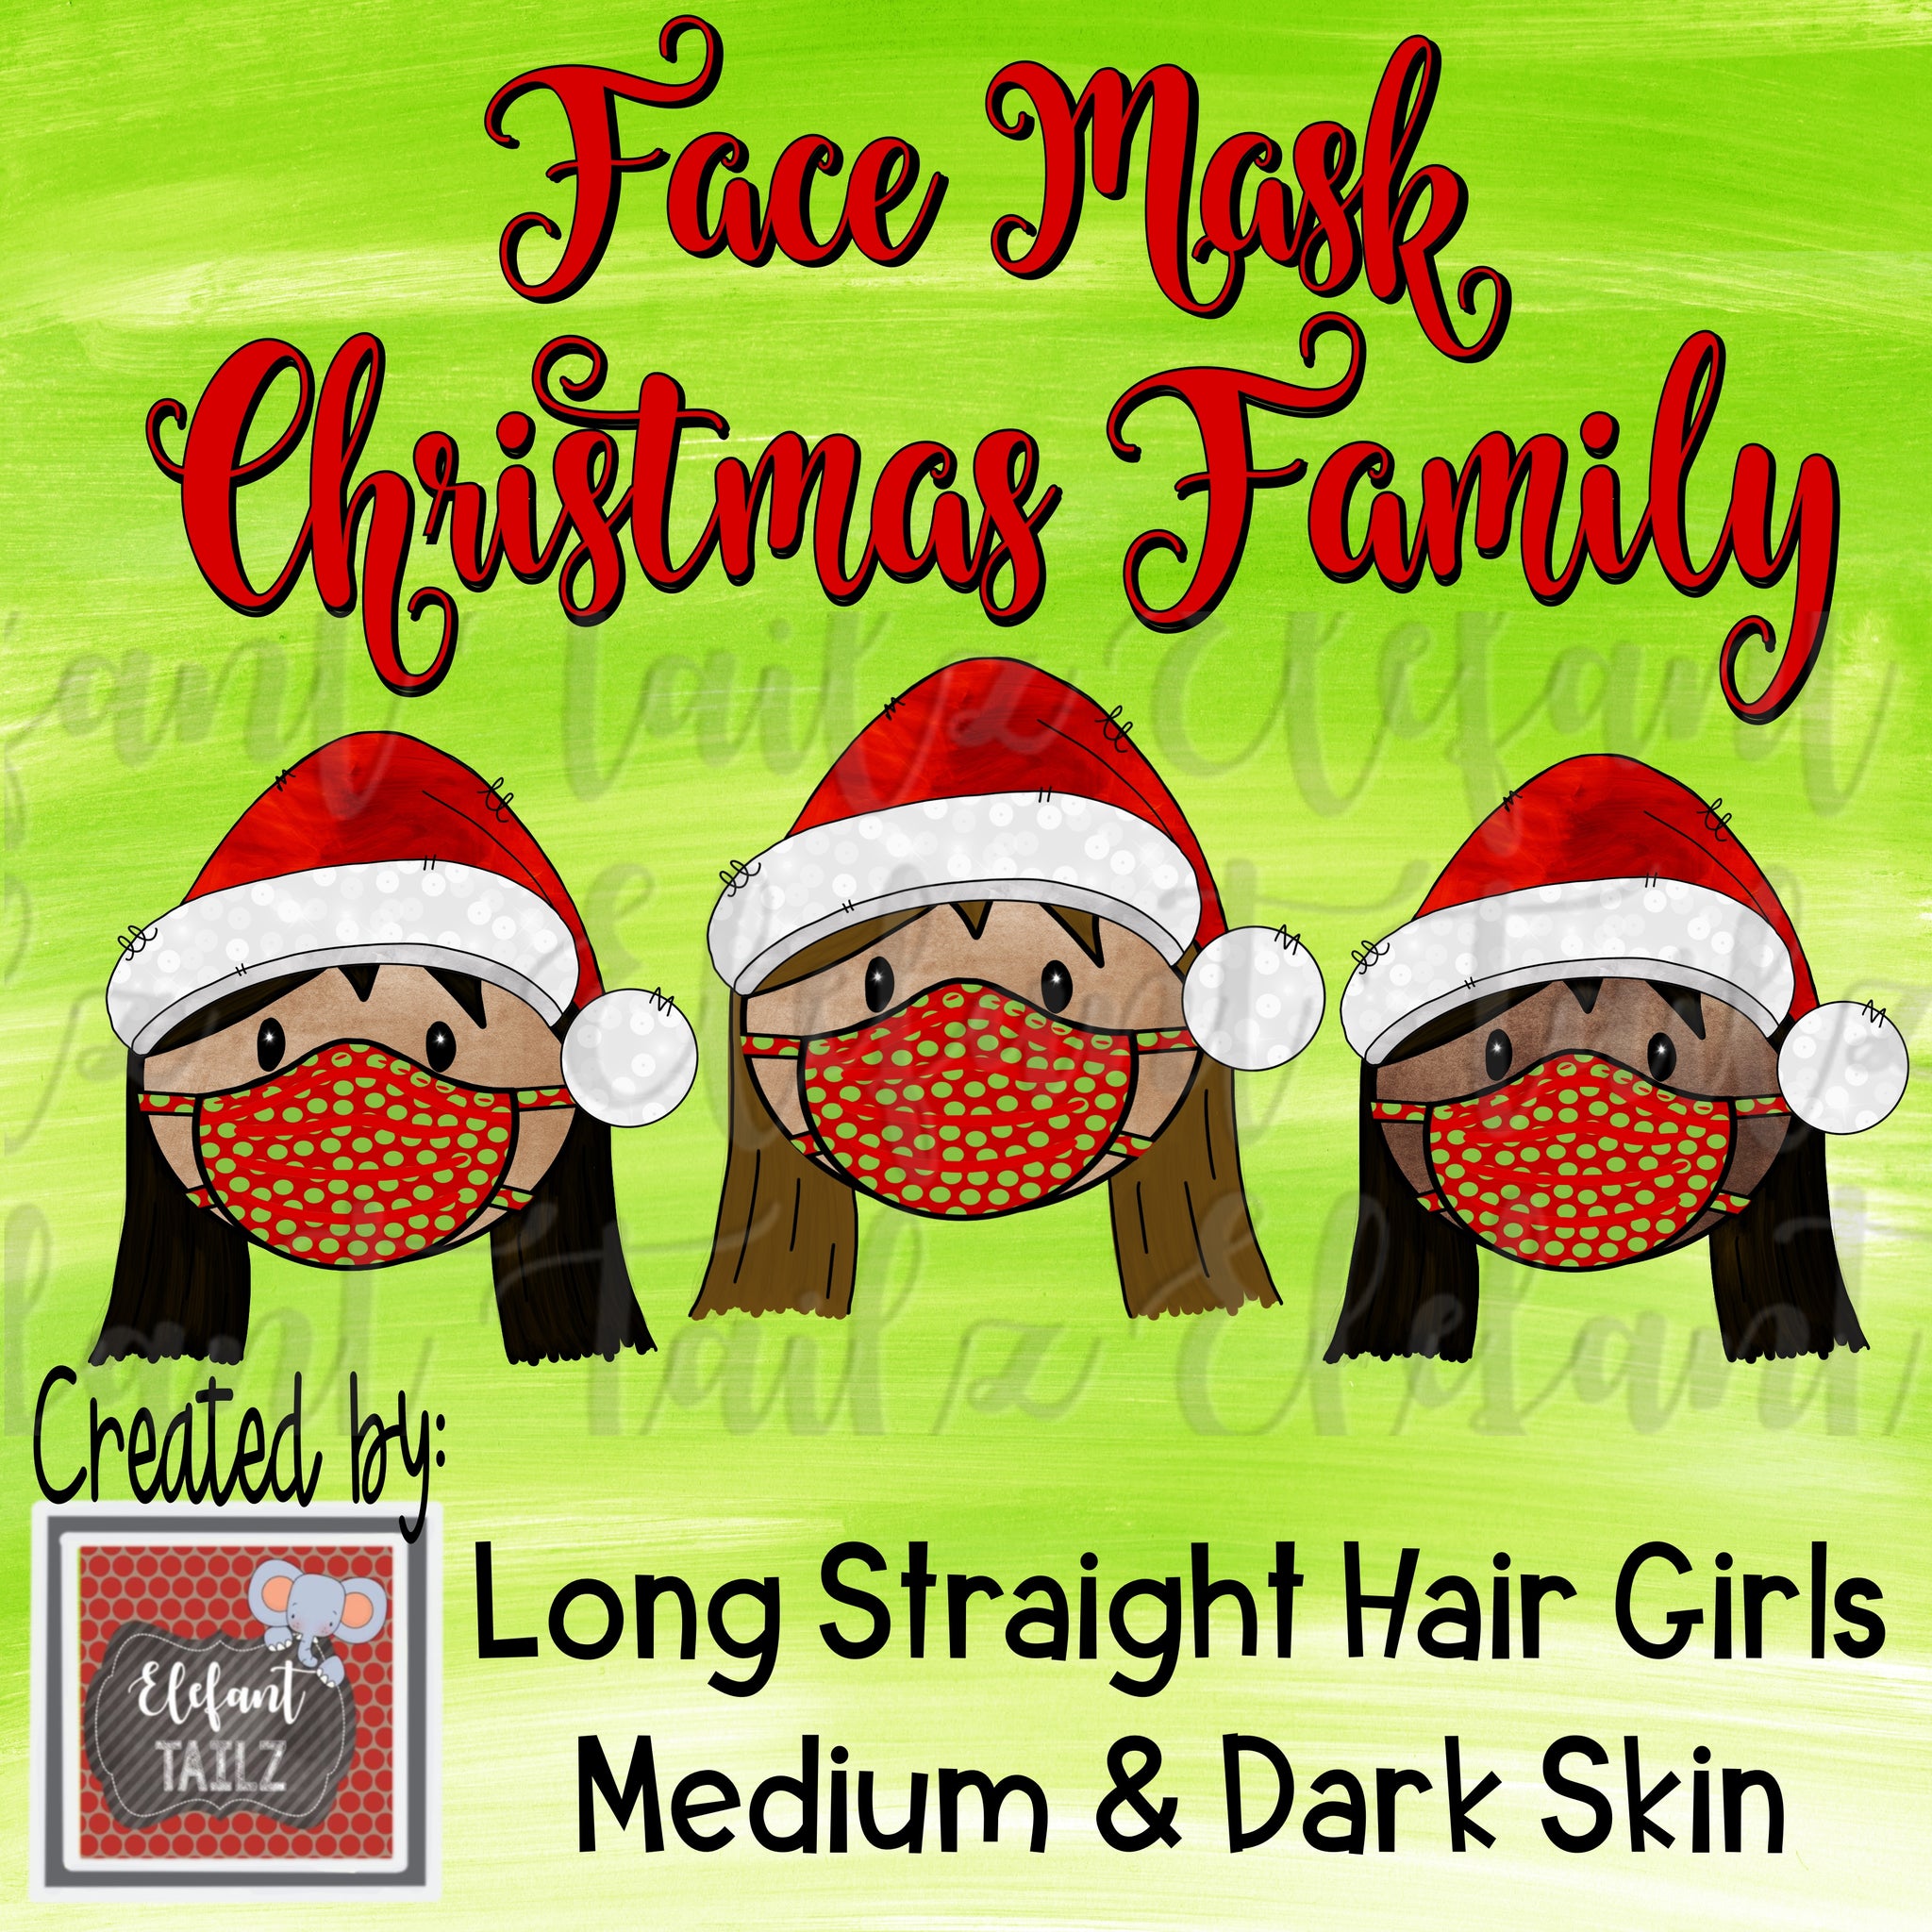 Face Mask Christmas Family - Long Straight Hair Girls - Medium & Dark Skin